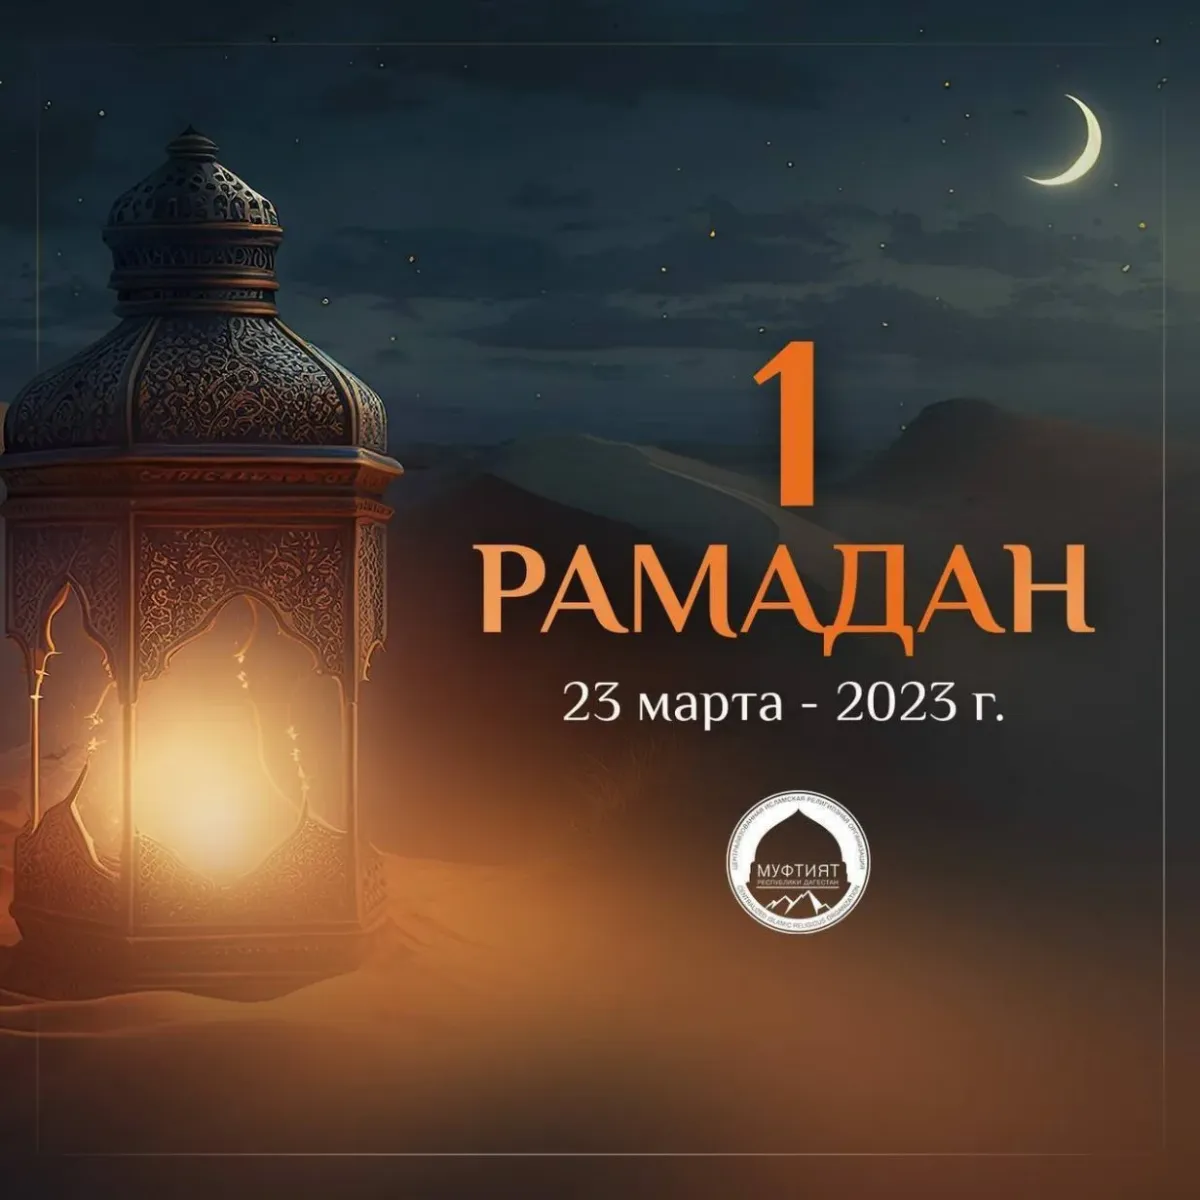 Поздравление с первым днем рамадана. Рамадан. Рамадан в 2023 году. Рамазан 2023 поздравляю. С началом Священного месяца Рамадан.